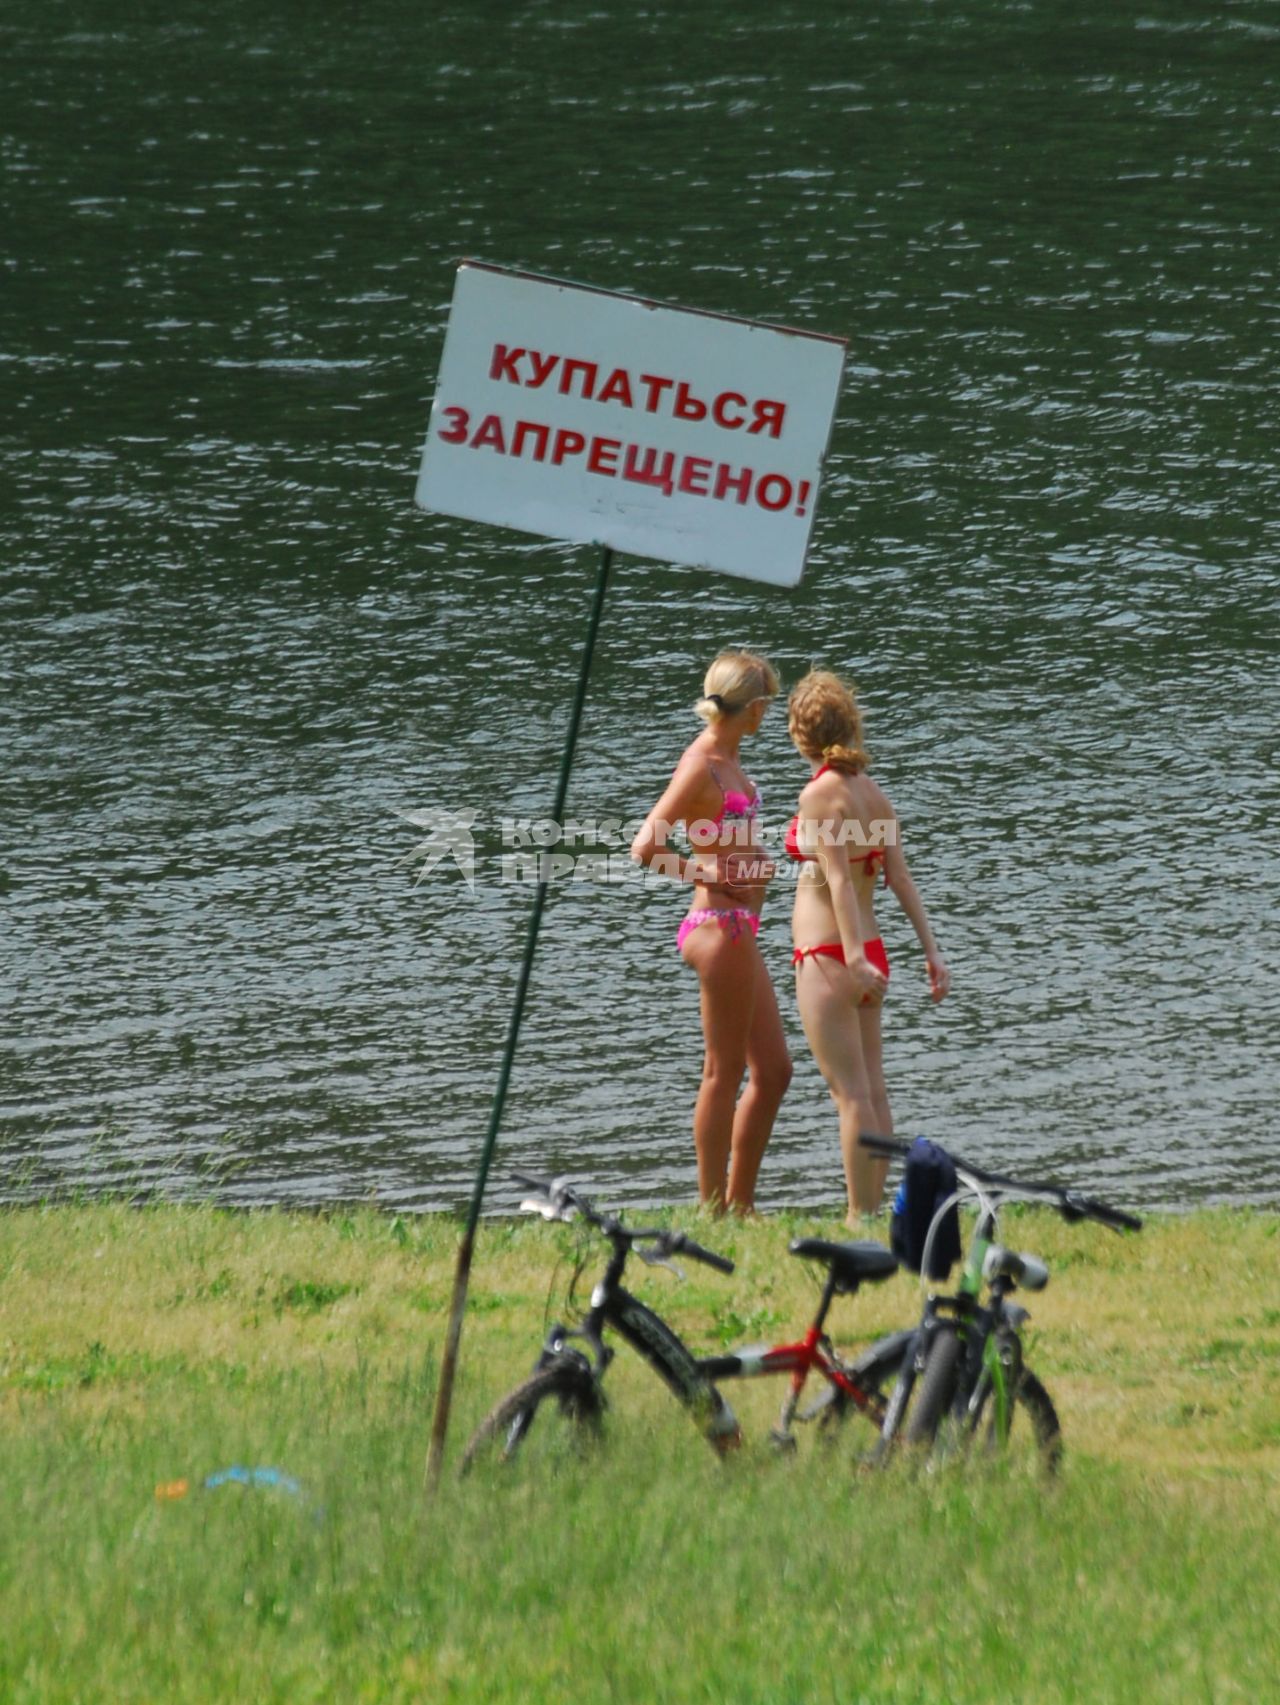 Две девушки в купальниках стоят на берегу водоема, рядом табличка `Купаться запрещено`.